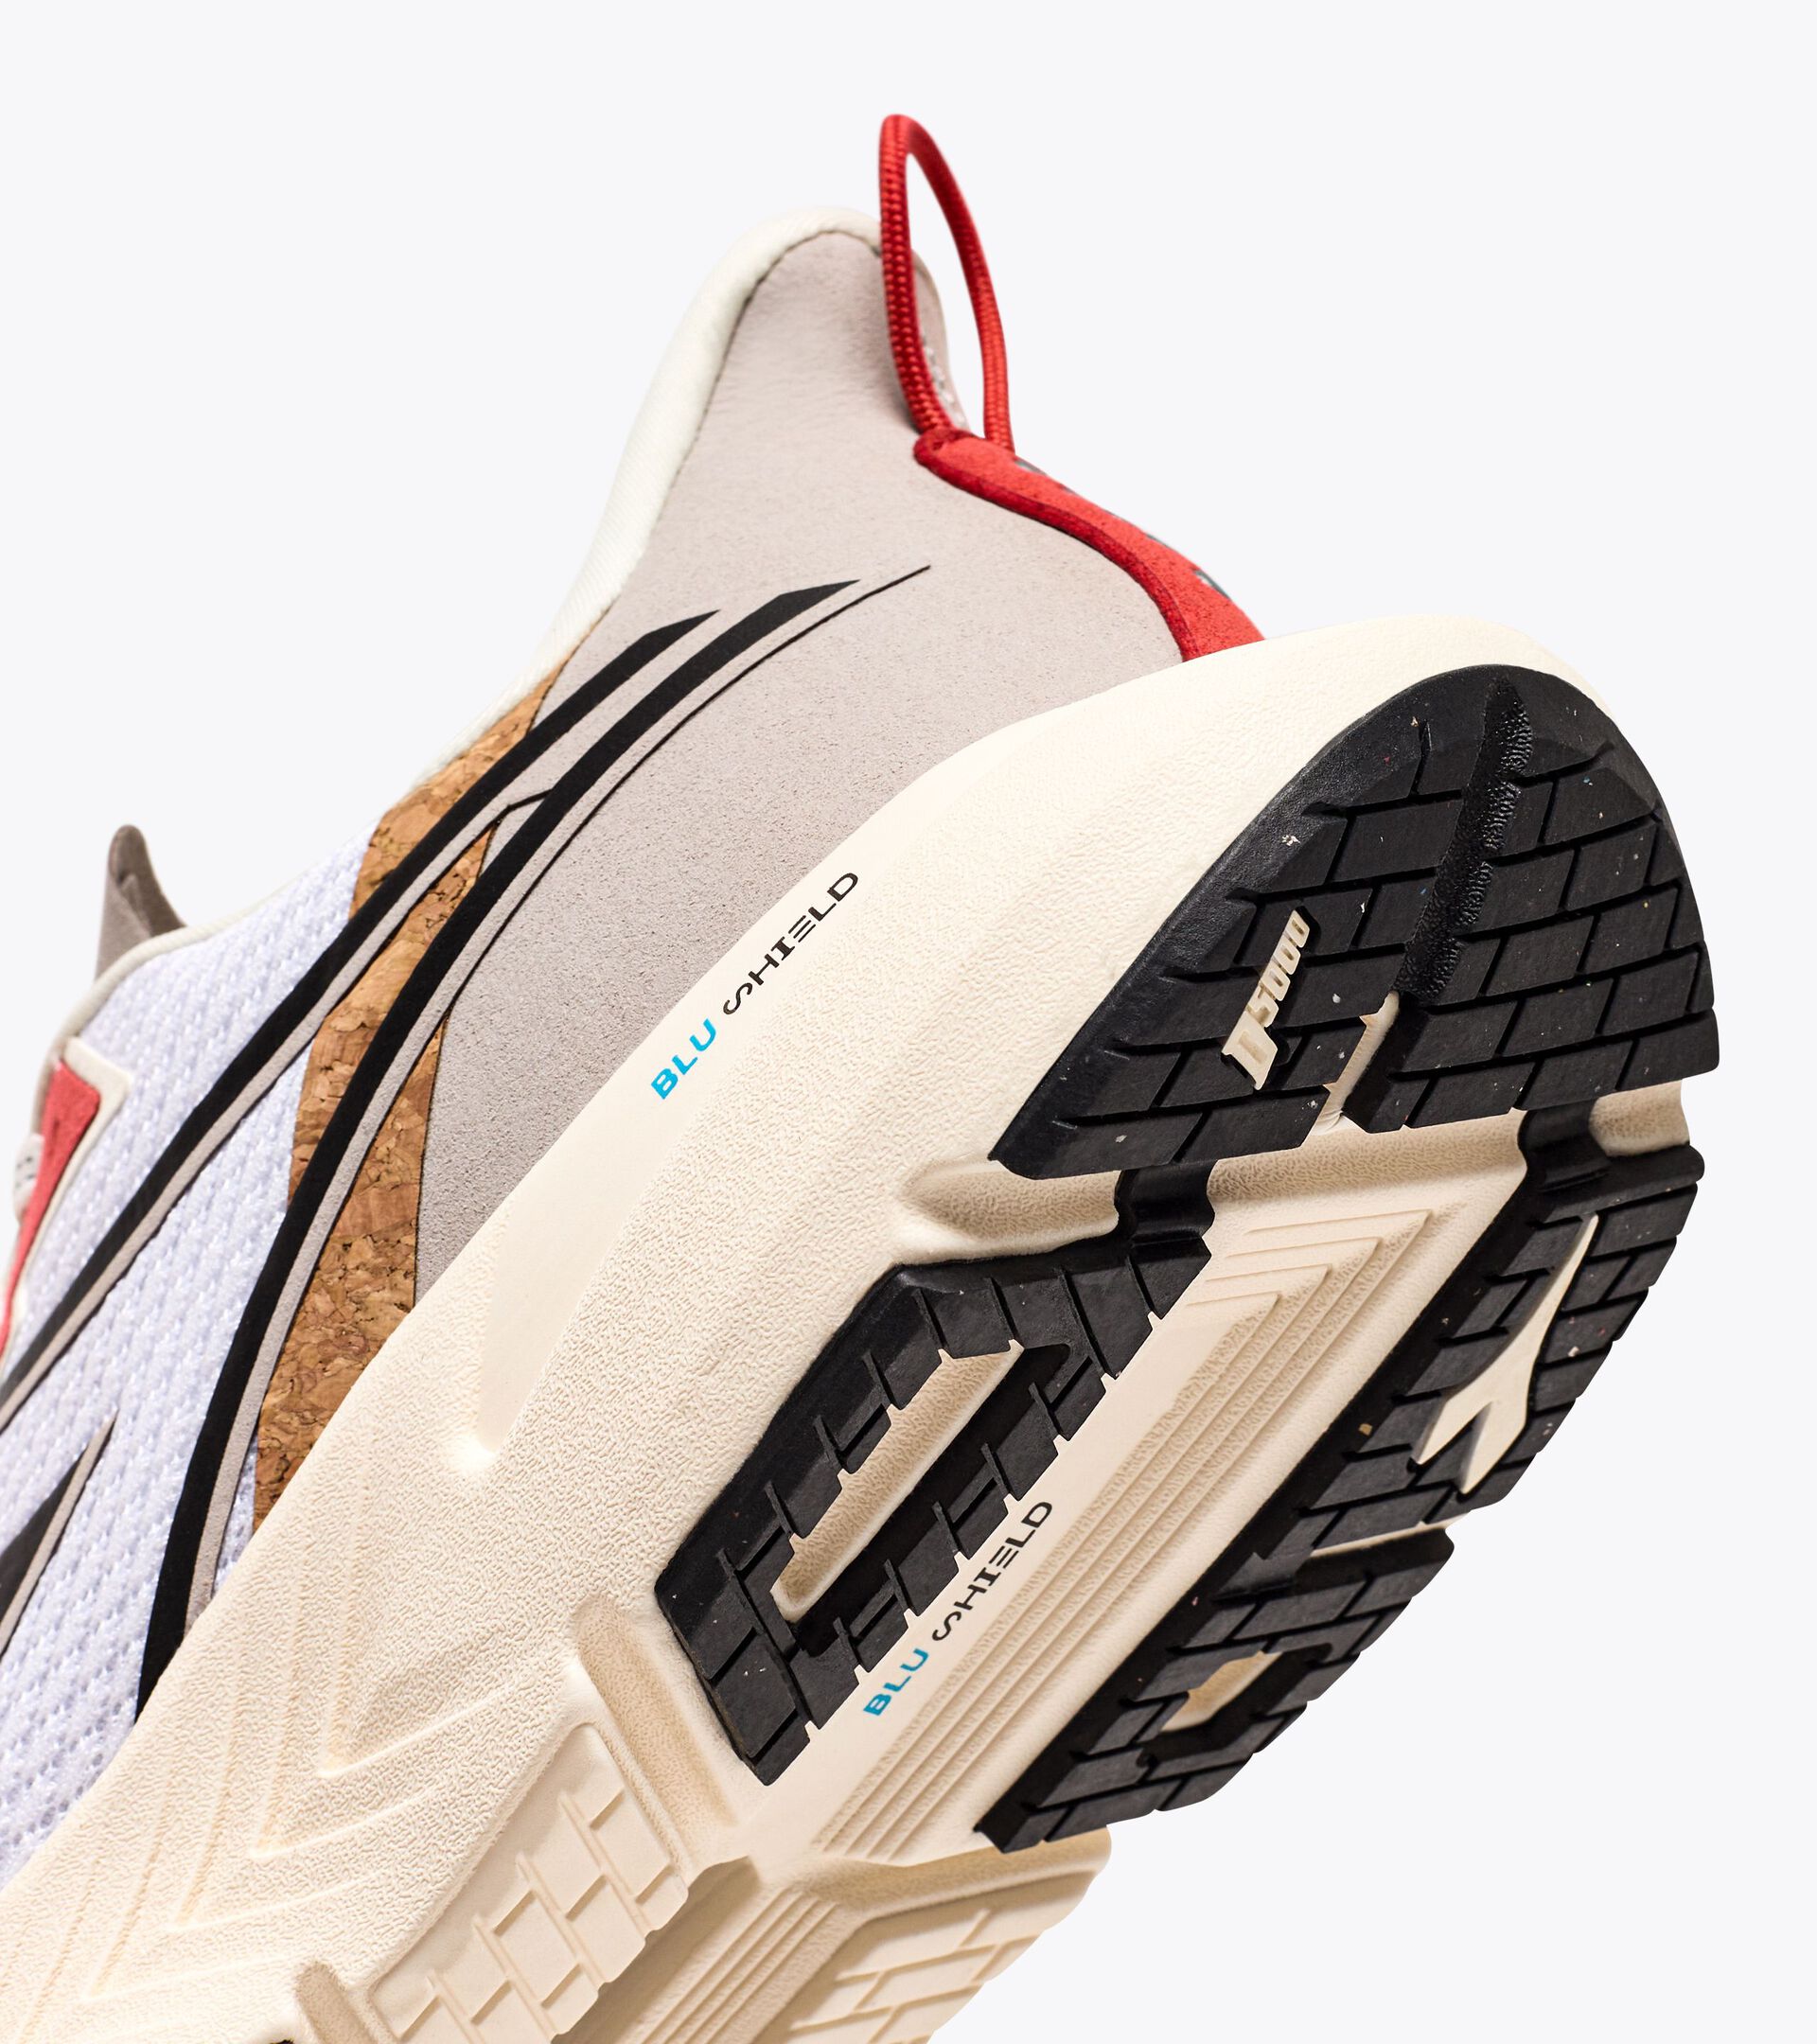 Chaussures de running - Homme - Réalisées avec des matières à impact réduit
 MYTHOS BLUSHIELD VOLO 4 2030 BLC/NR/ROUGE CAYENNE - Diadora